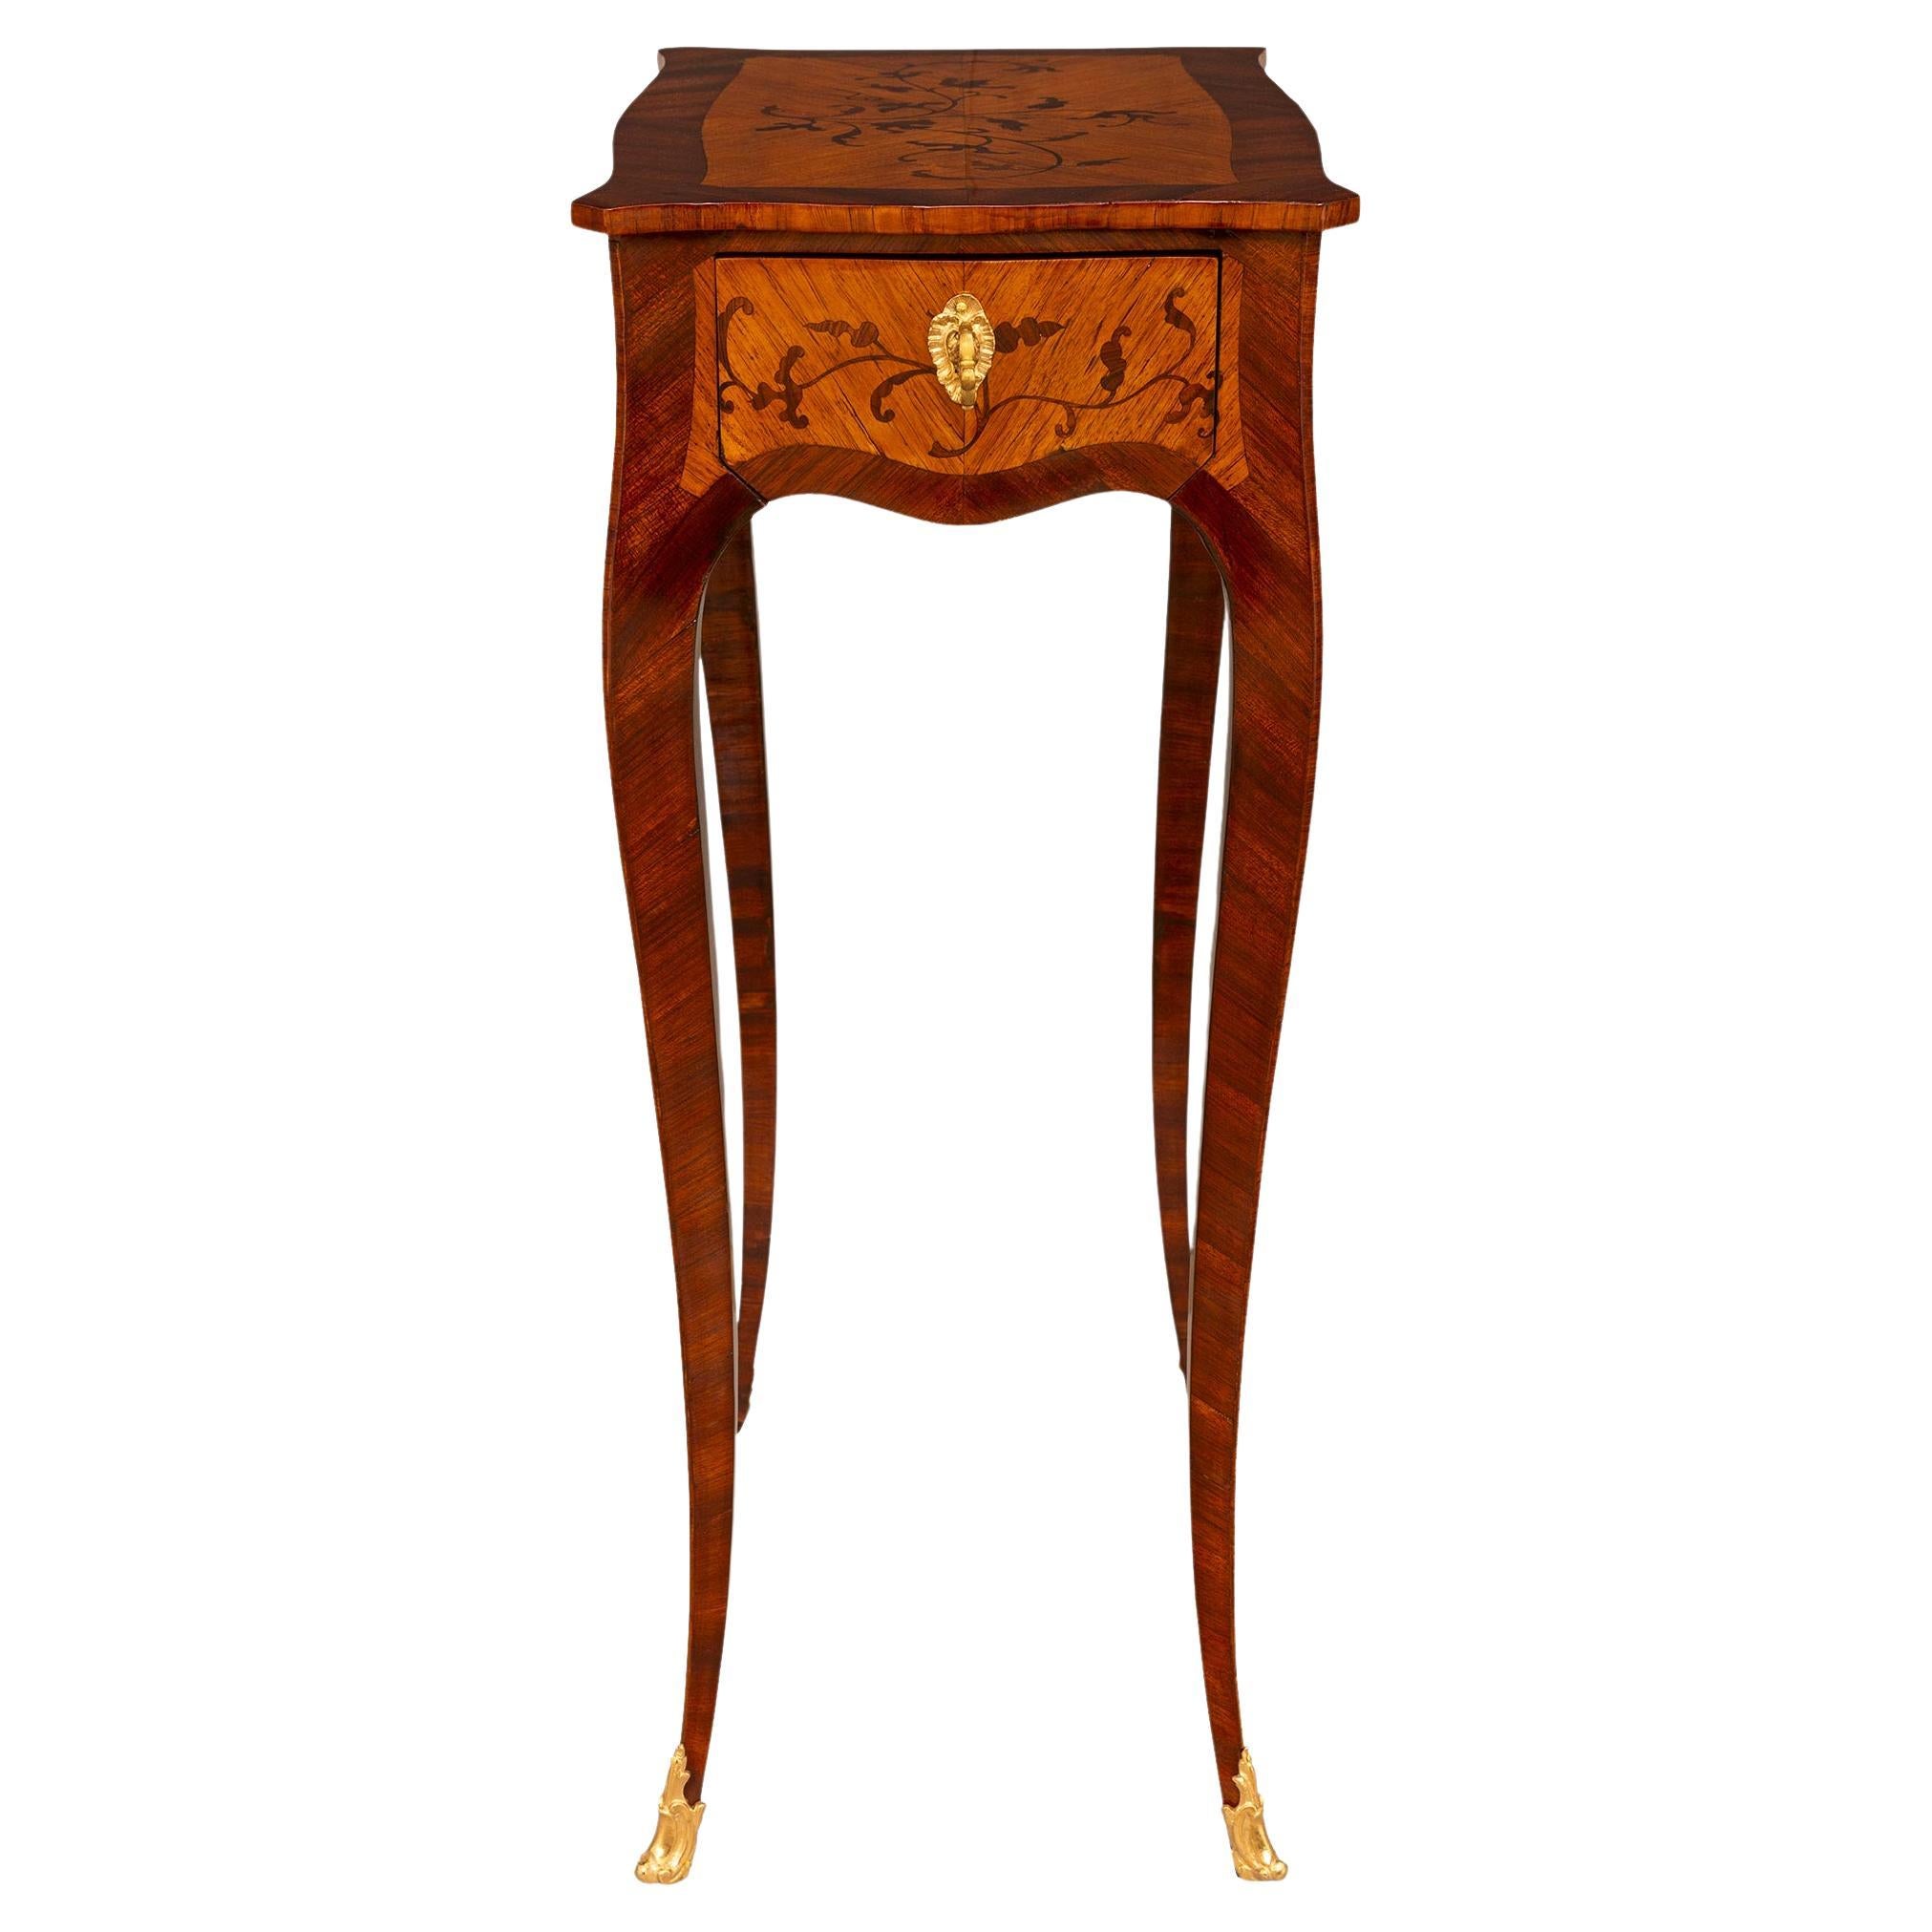 Table d'appoint en bois de roi, tulipier et bronze doré de style Louis XV du 19e siècle français